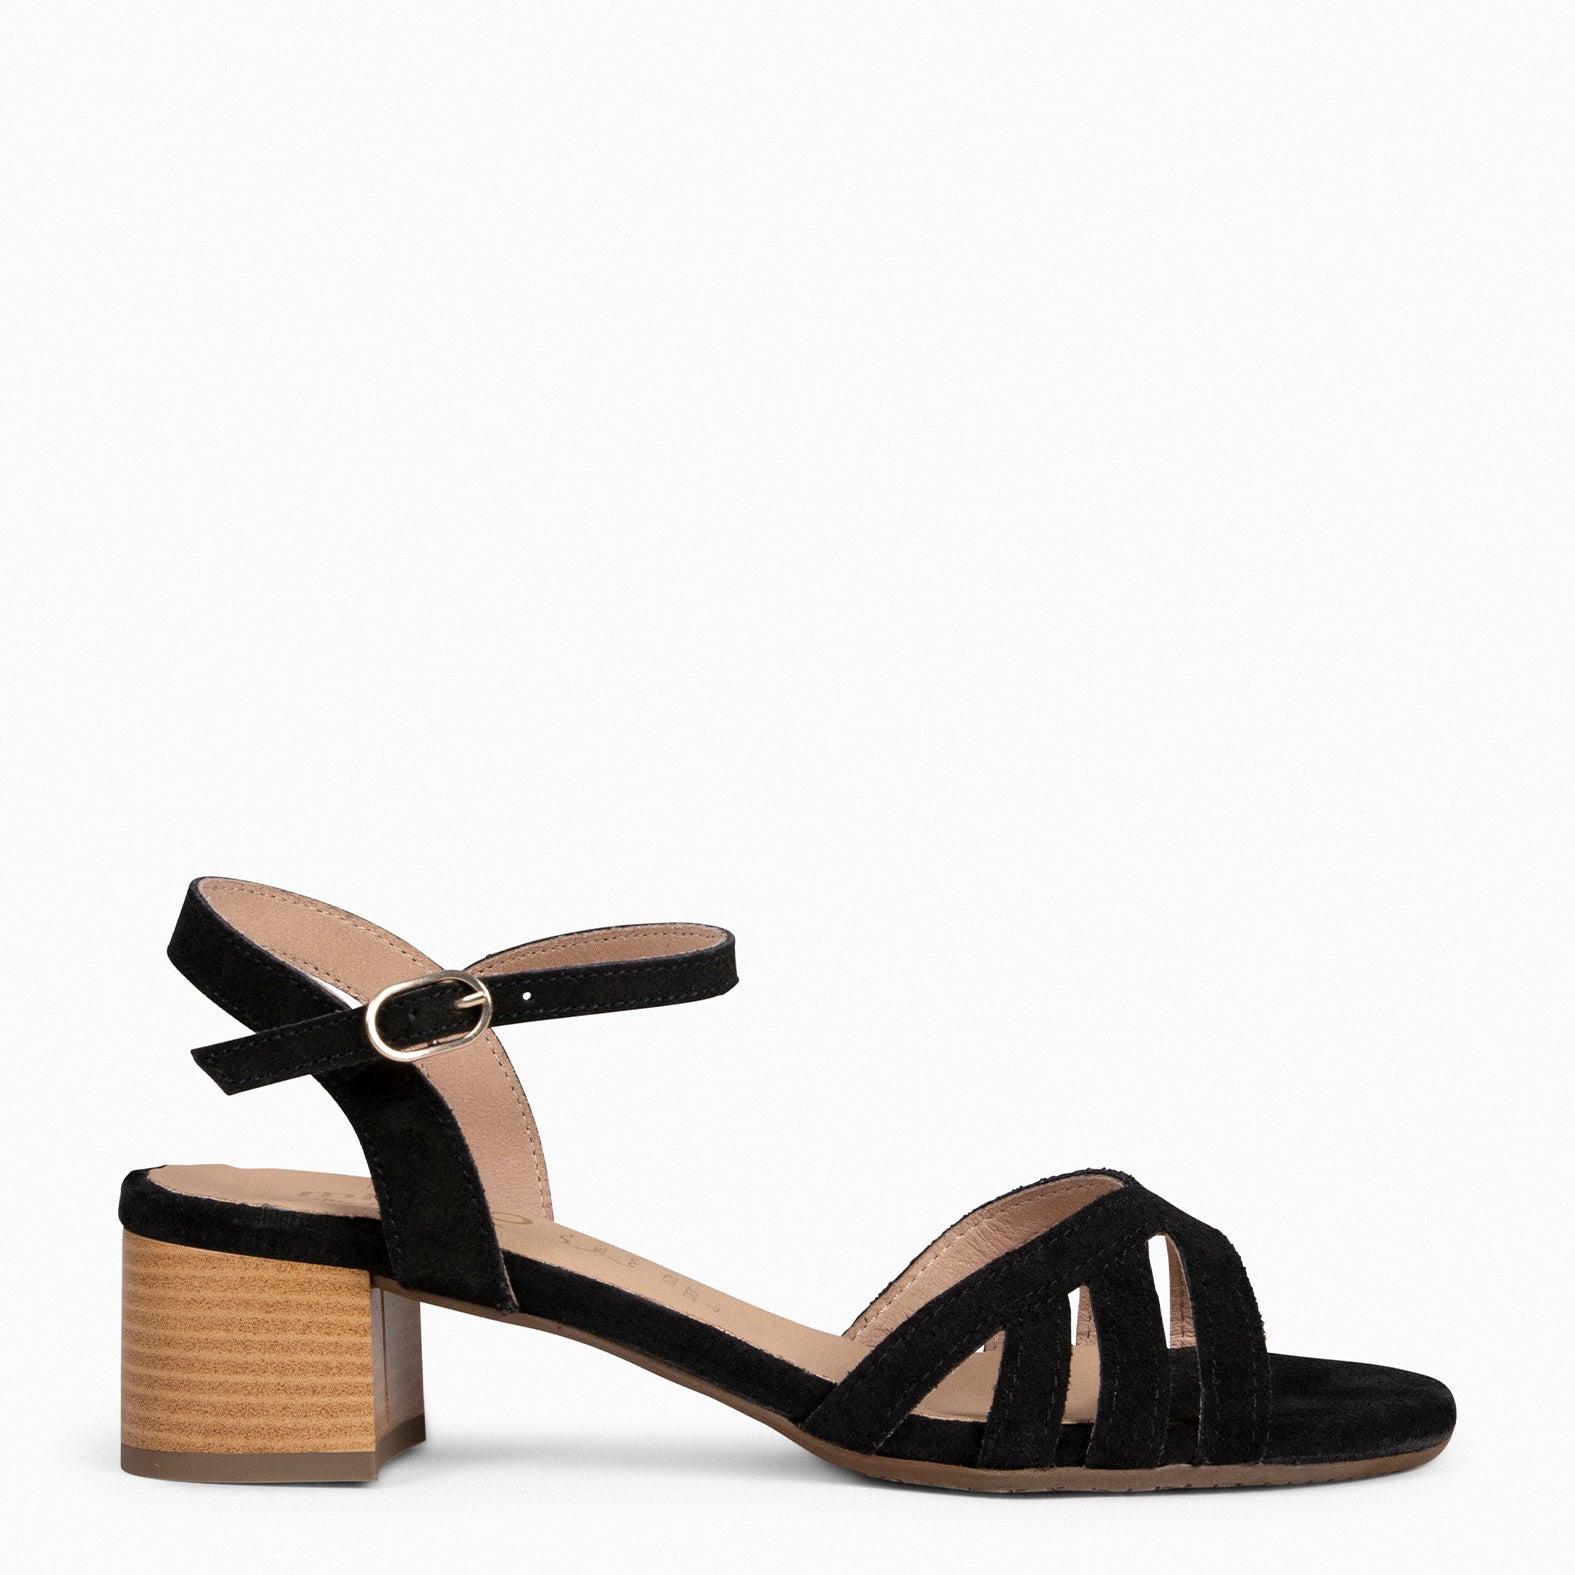 GRACE – BLACK Women Casual Sandals